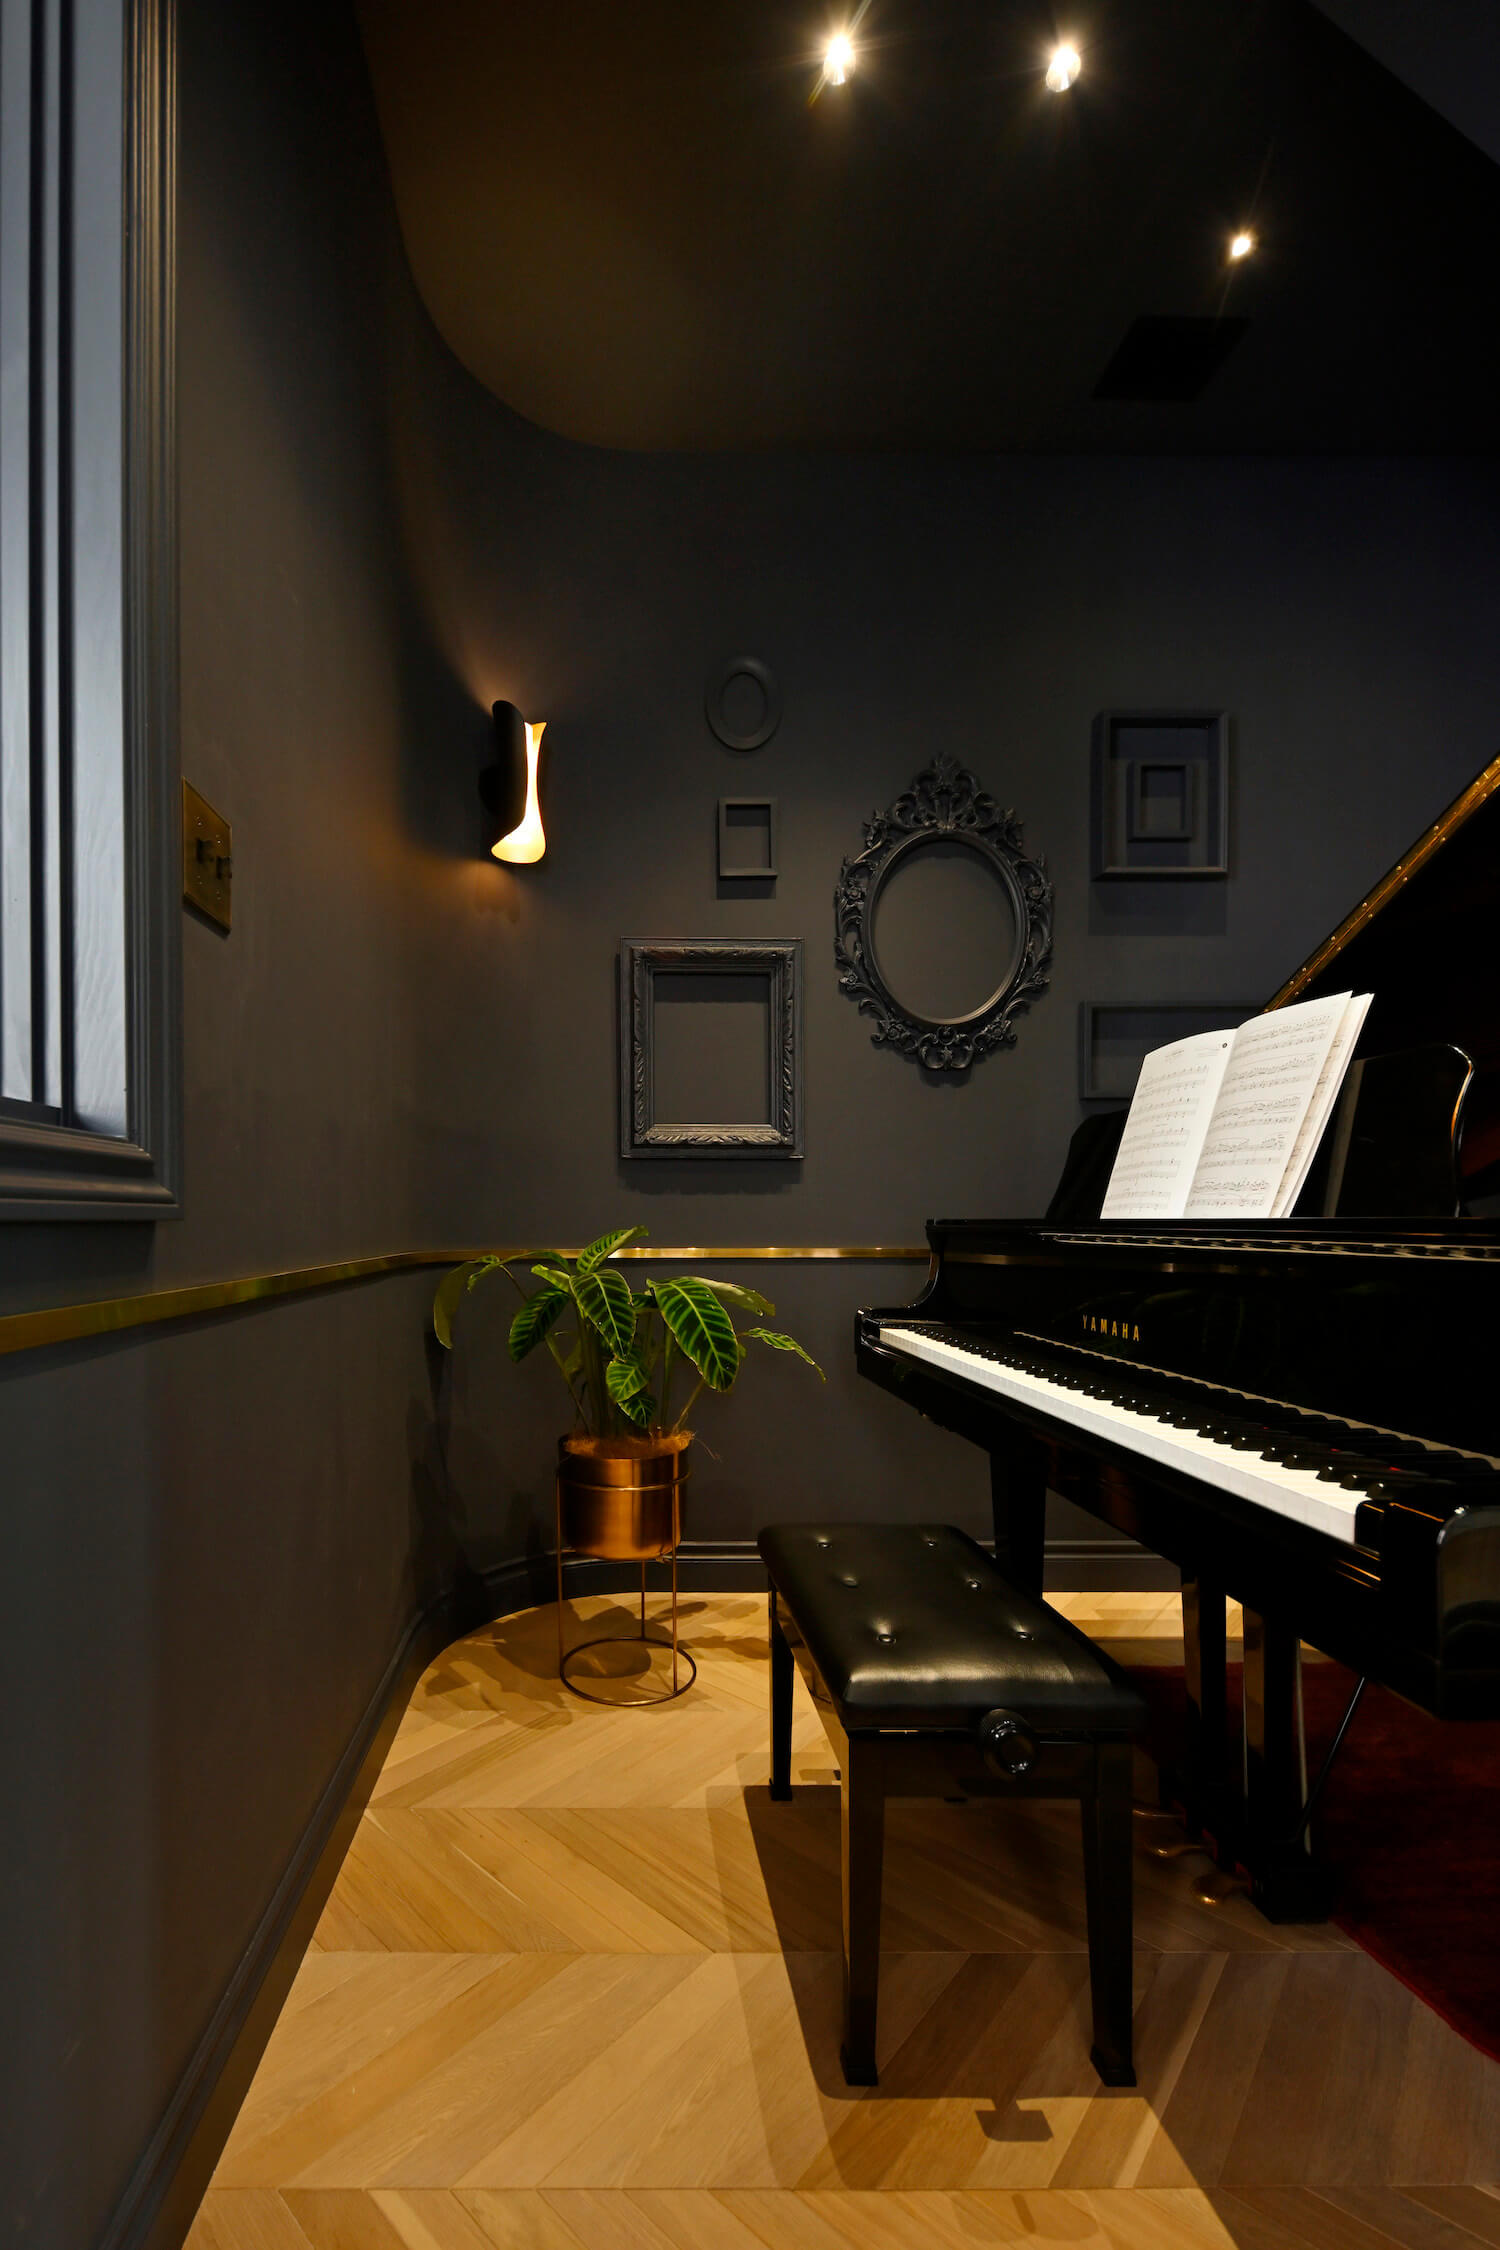 ファームハウススタイルの輸入注文住宅のピアノ